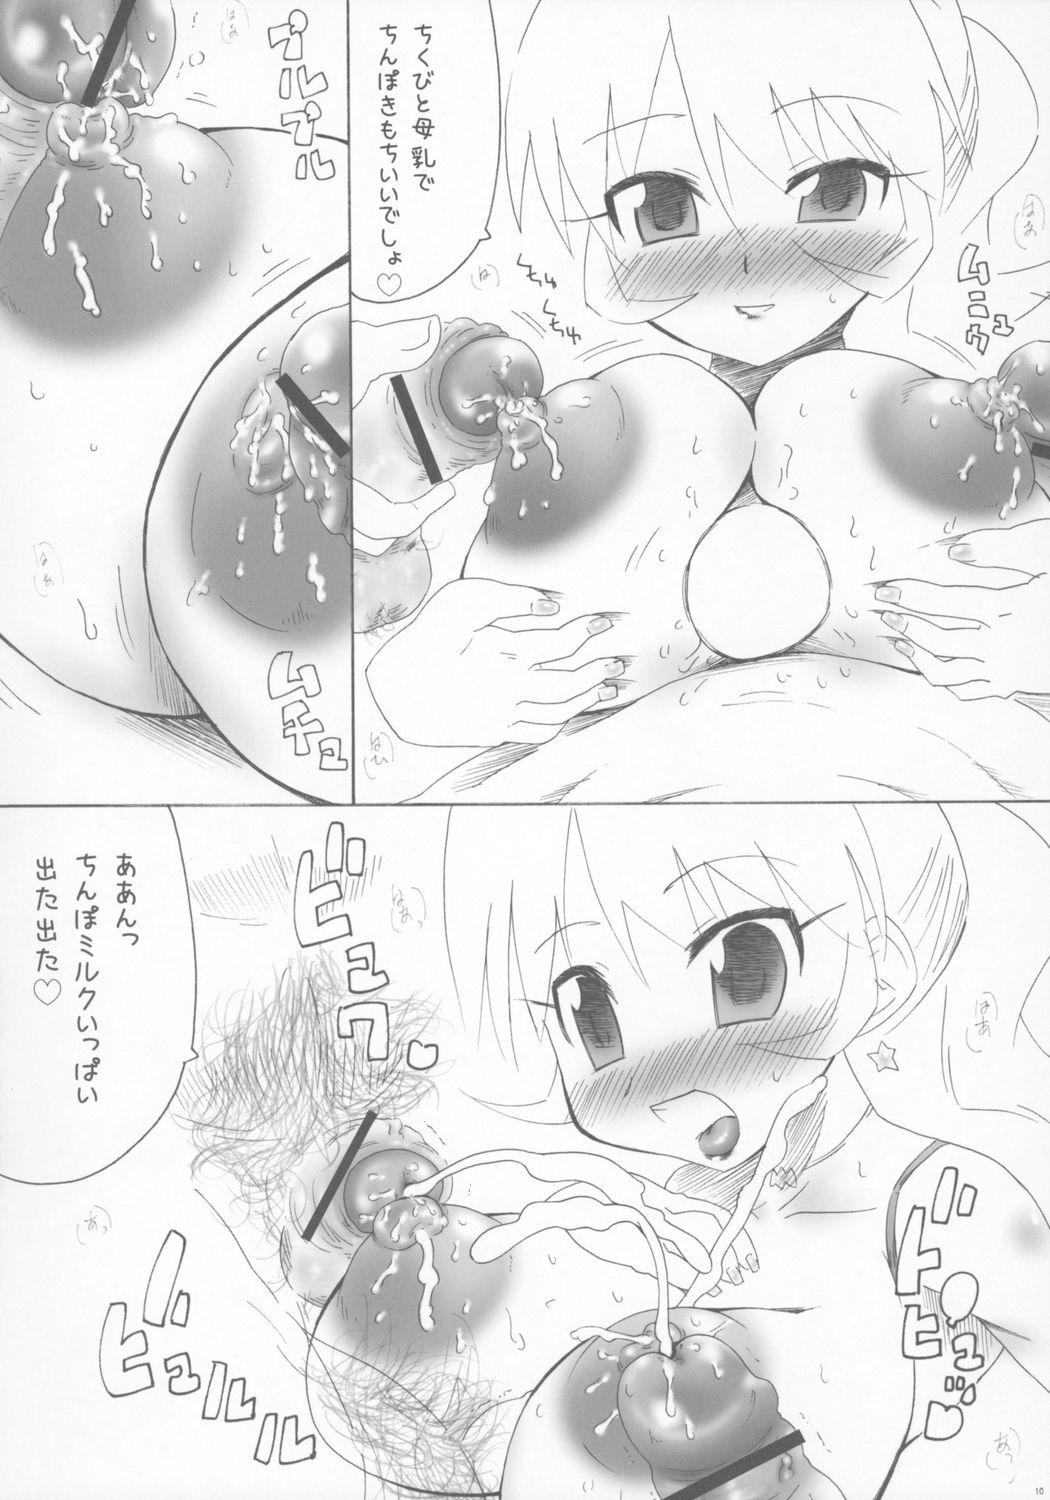 Brunet Mama Hime - Fushigiboshi no futagohime Twinkle star sprites Alone - Page 9